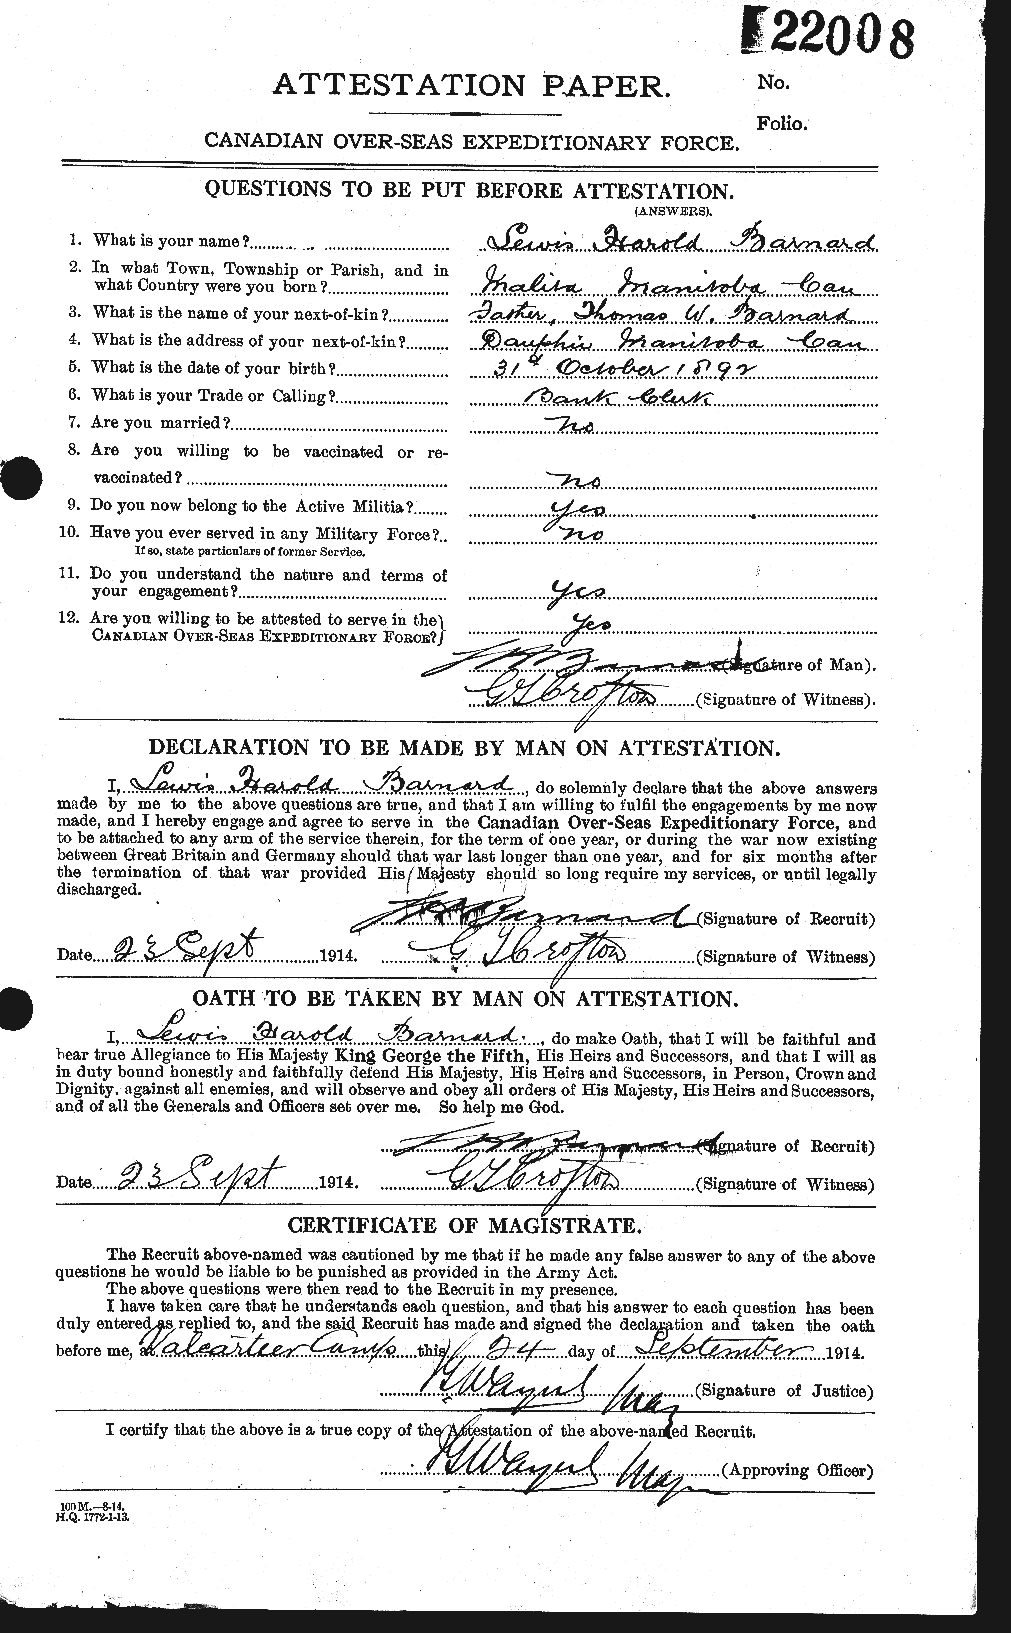 Dossiers du Personnel de la Première Guerre mondiale - CEC 226033a